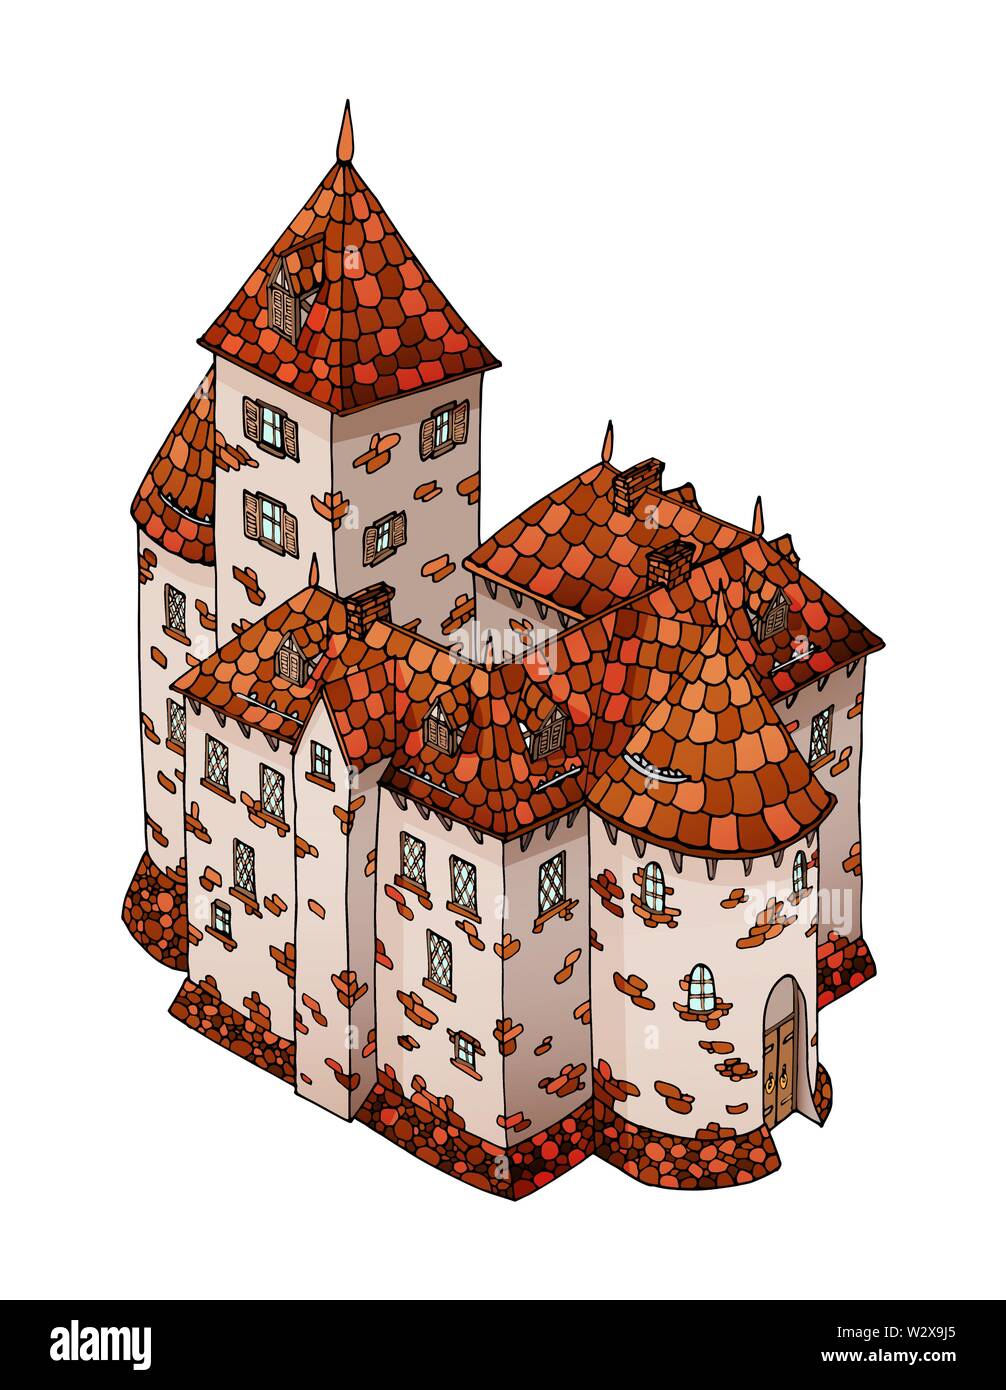 Cartoon Caballero Medieval Europeo castillo. La construcción de la fortificación de piedra Ilustración del Vector